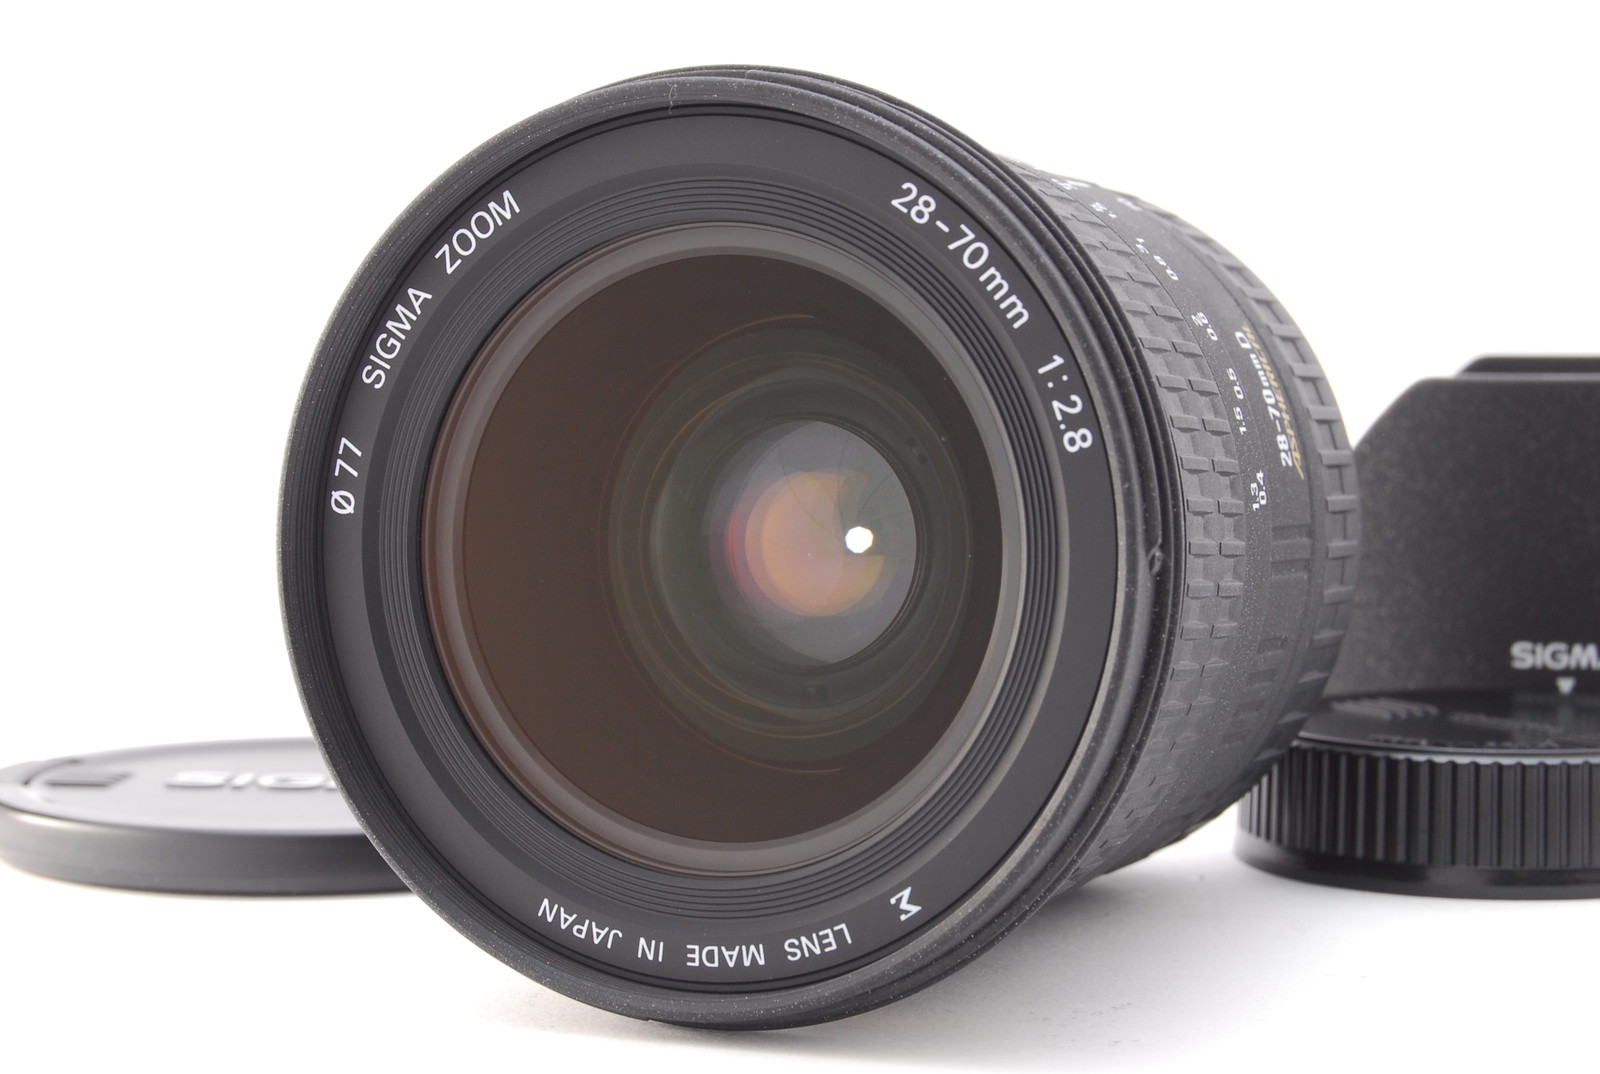 PROMOTION.APPEARANCE NEAR MINT Sigma 28-70mm f/2.8 D EX Aspherical AF Lens for Nikon